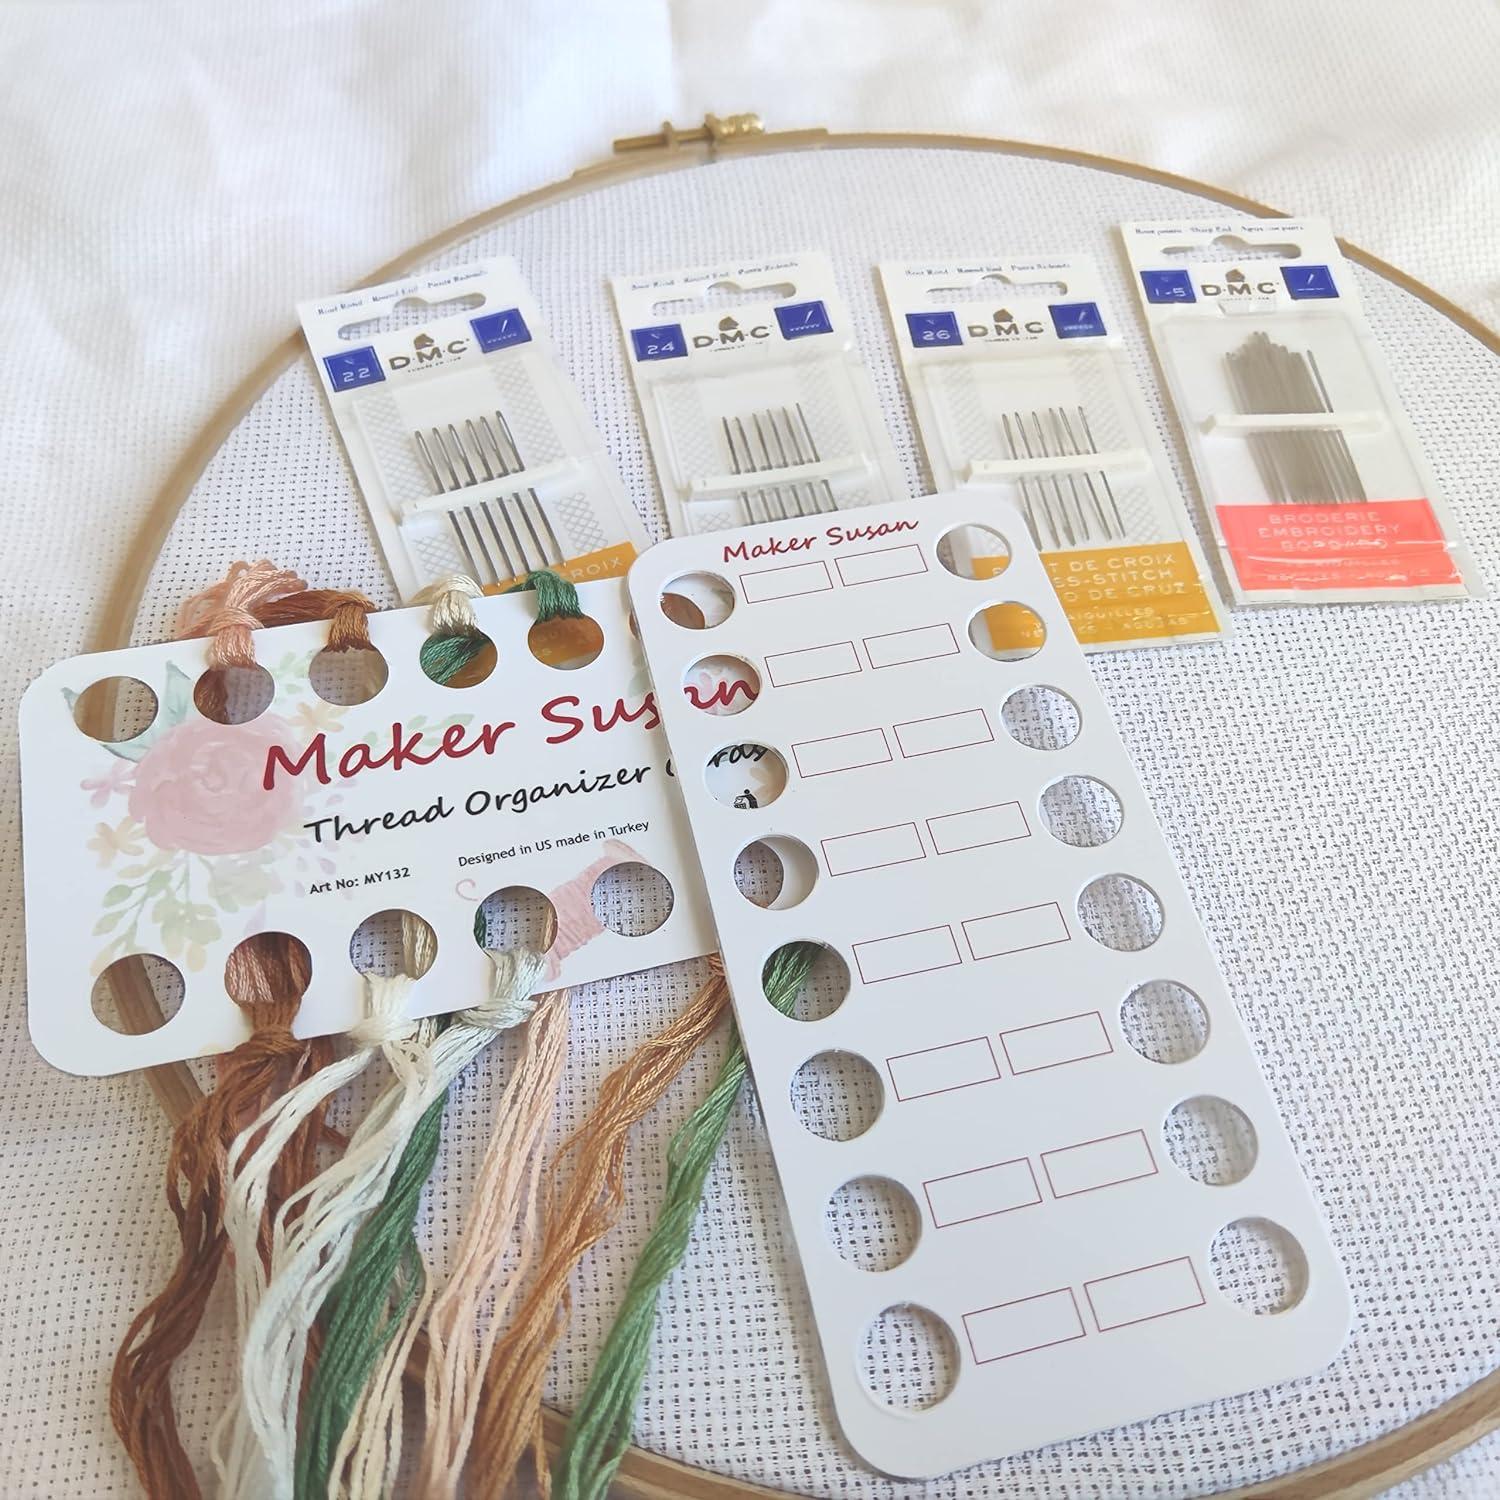 dmc embroidery thread organizer